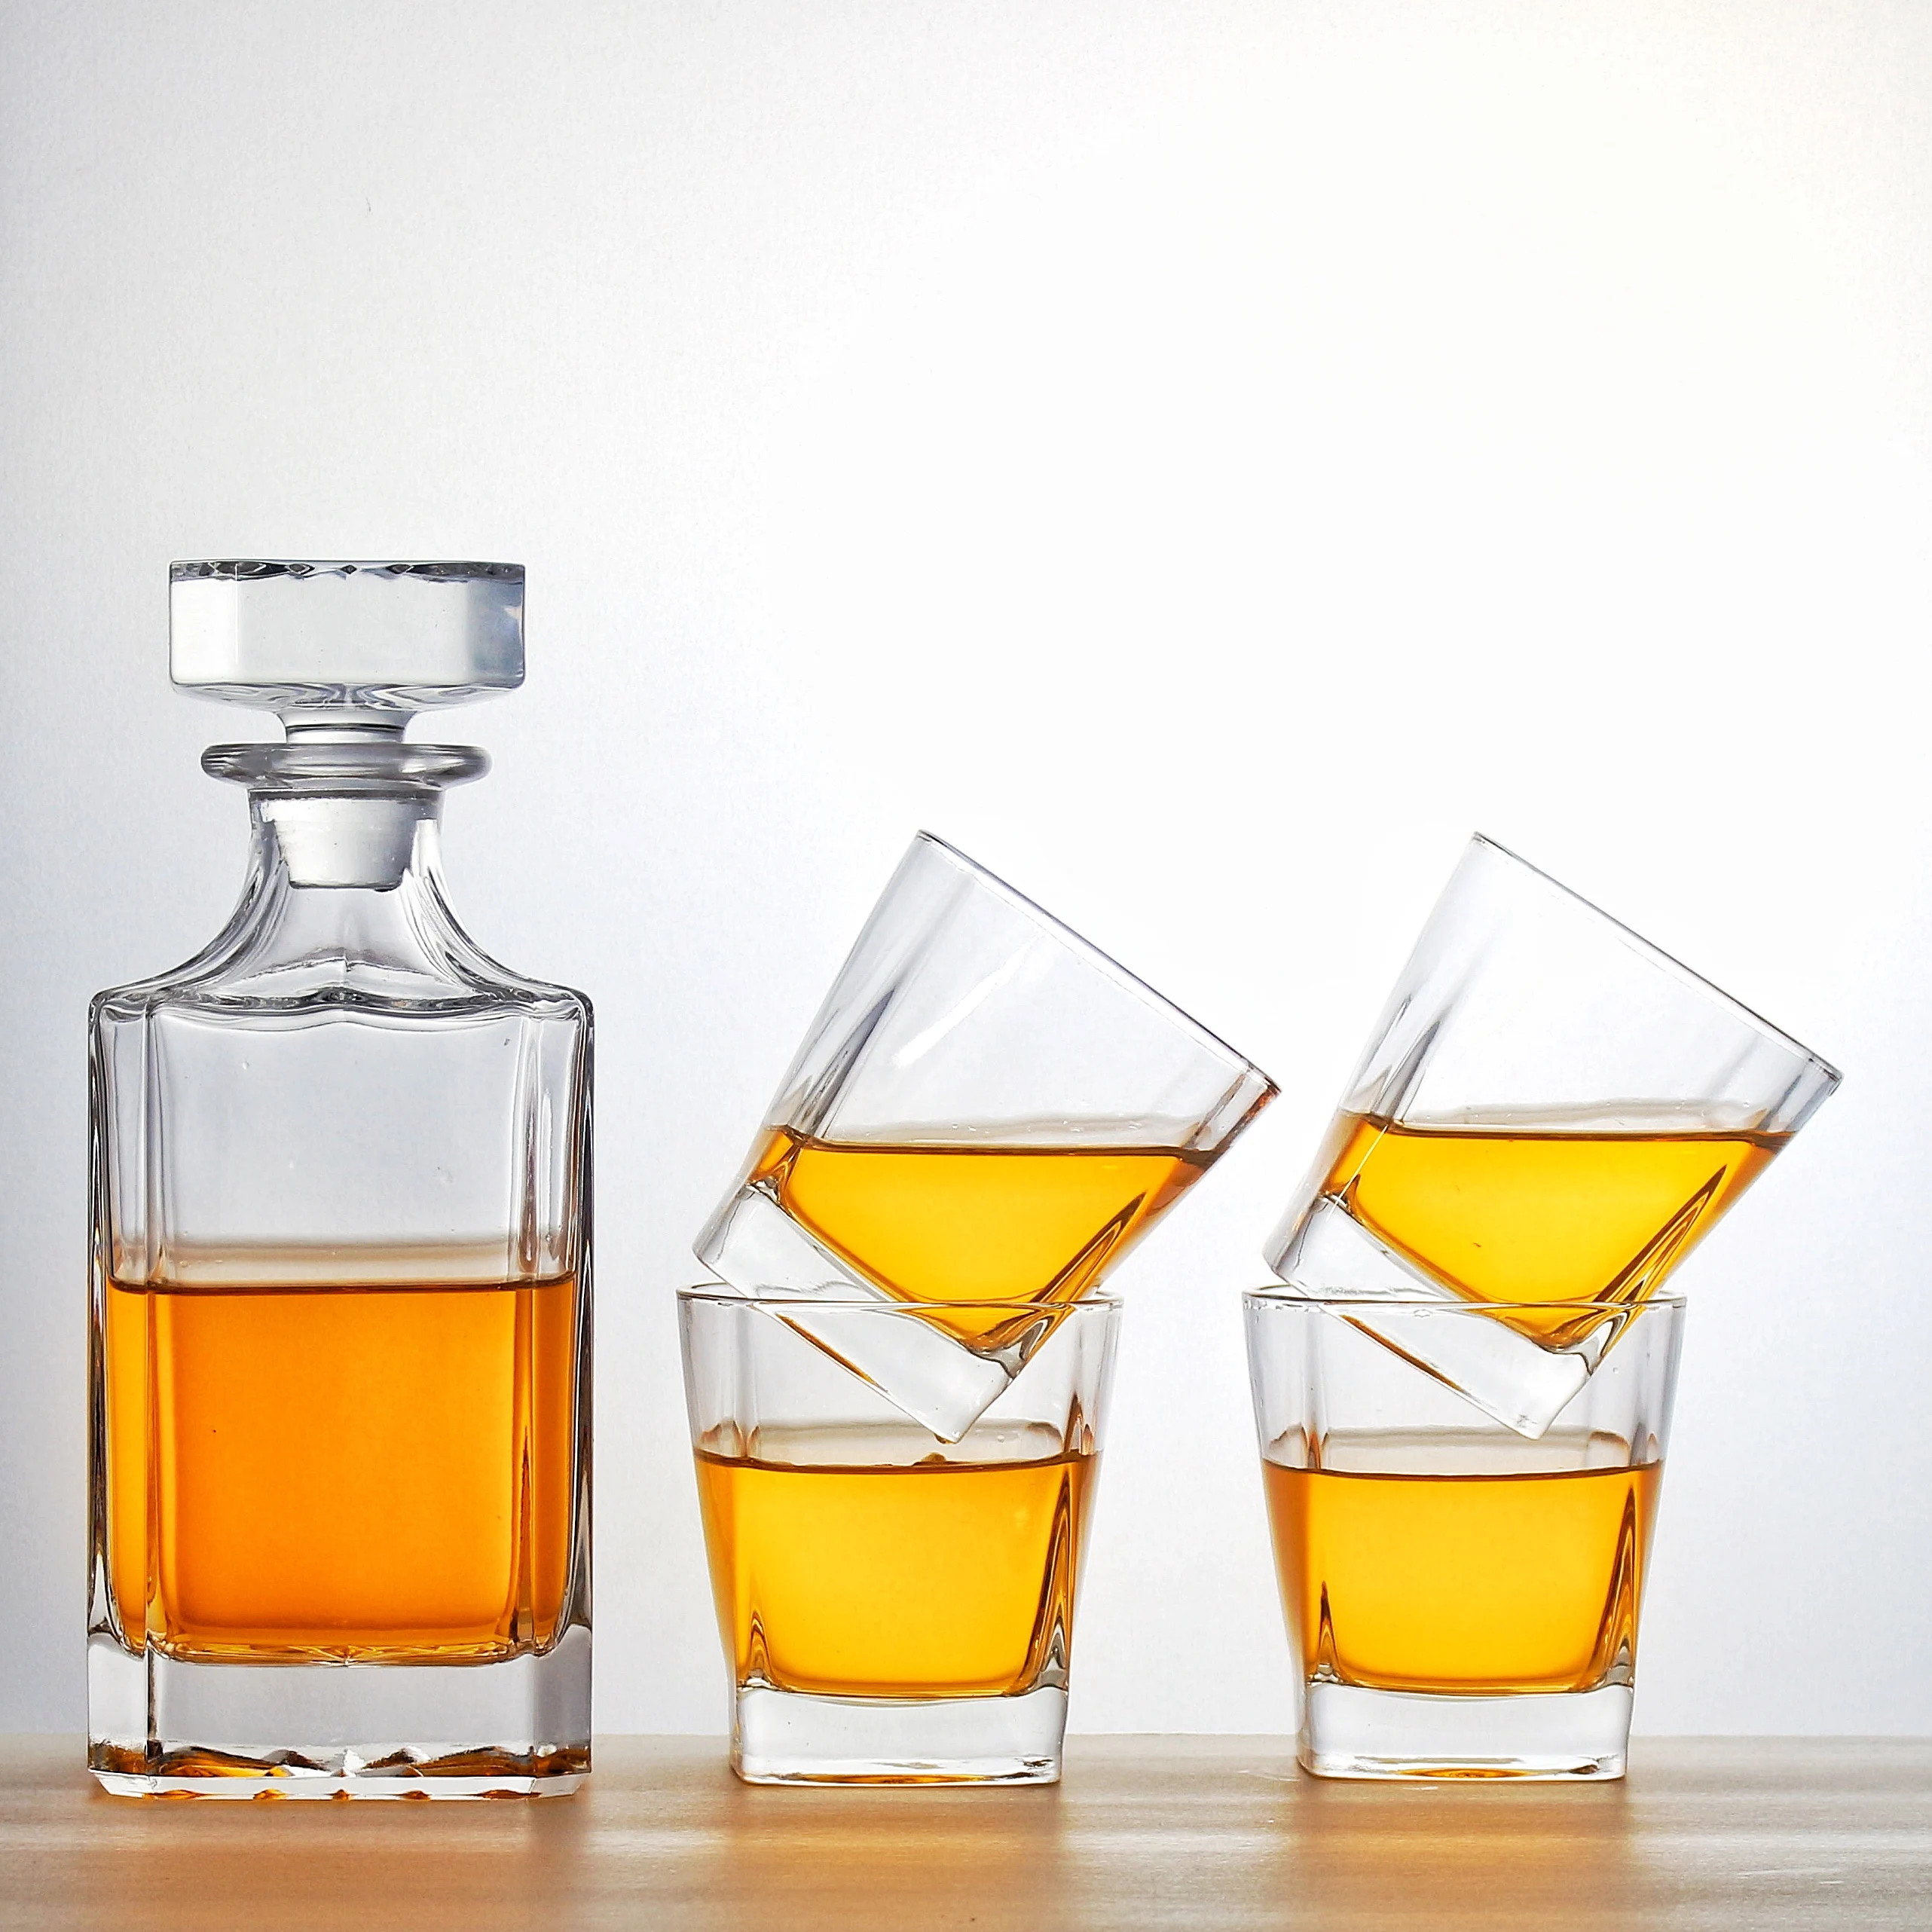 

Стеклянный графин для виски, набор из 5 предметов в роскошной подарочной коробке, прозрачный графин без свинца с 4 бокалами для виски